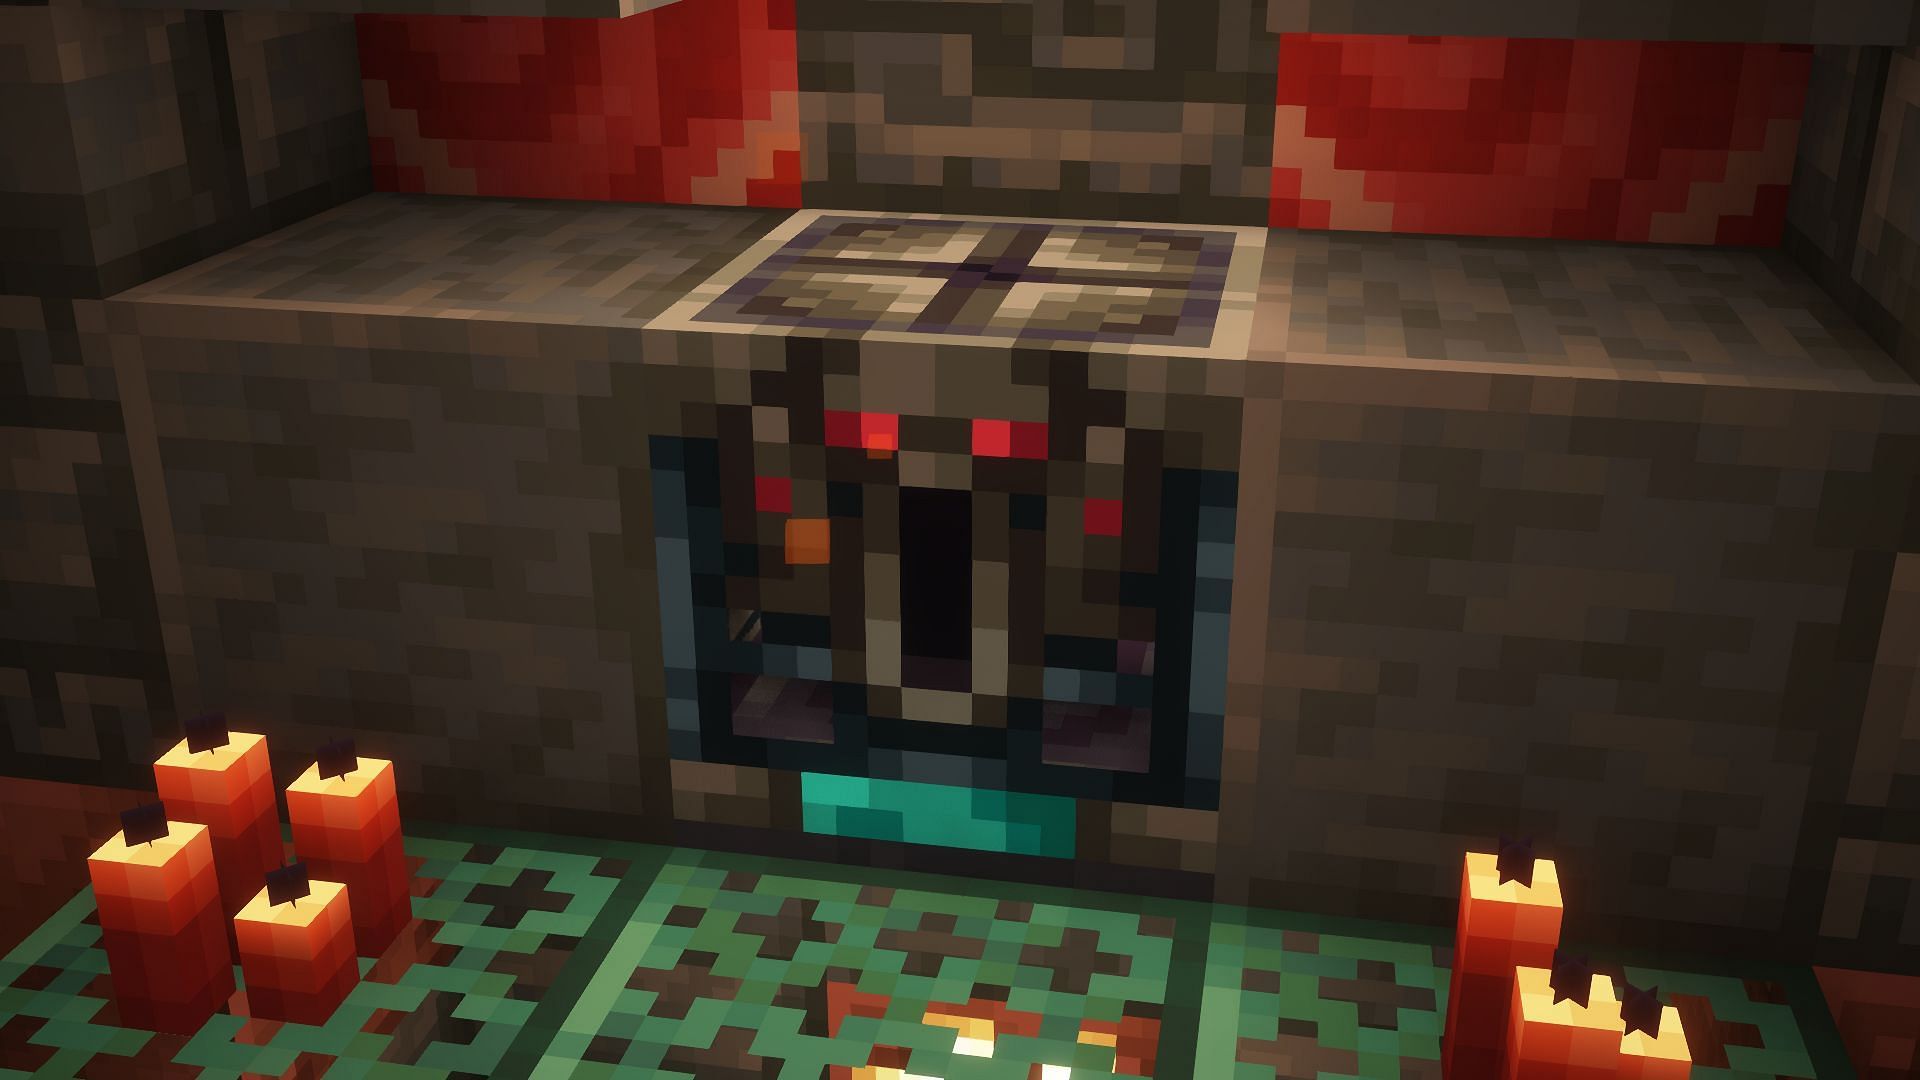 Ominous trial spawner in Minecraft. (Image via Mojang)